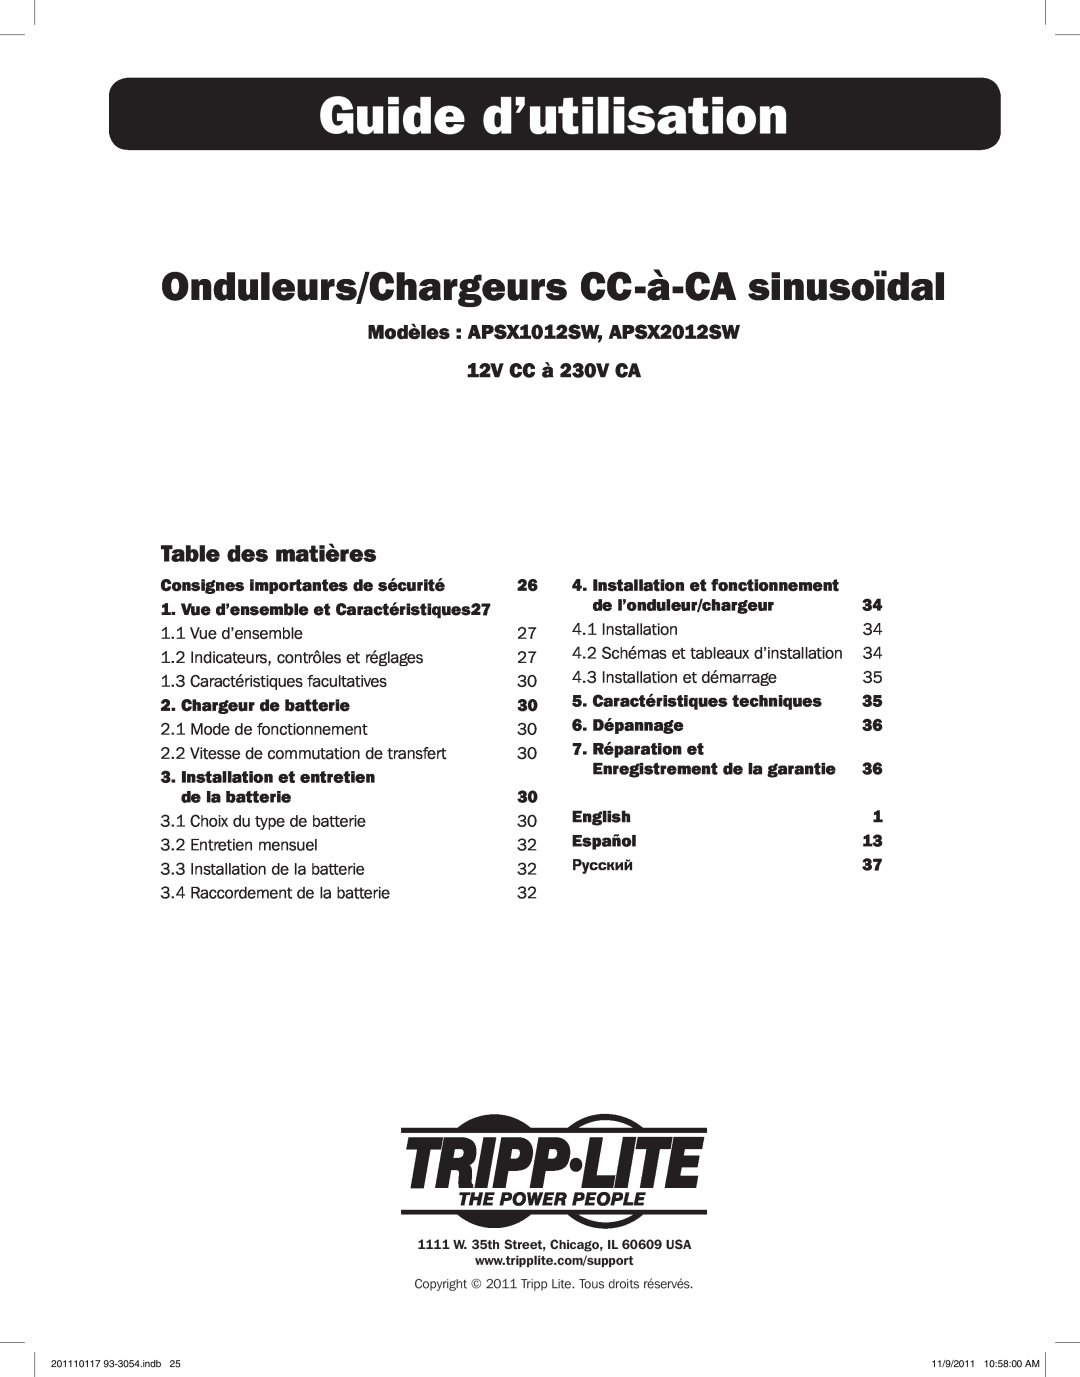 Tripp Lite APSX2012SW Guide d’utilisation, Onduleurs/Chargeurs CC-à-CA sinusoïdal, Table des matières, Dépannage, English 